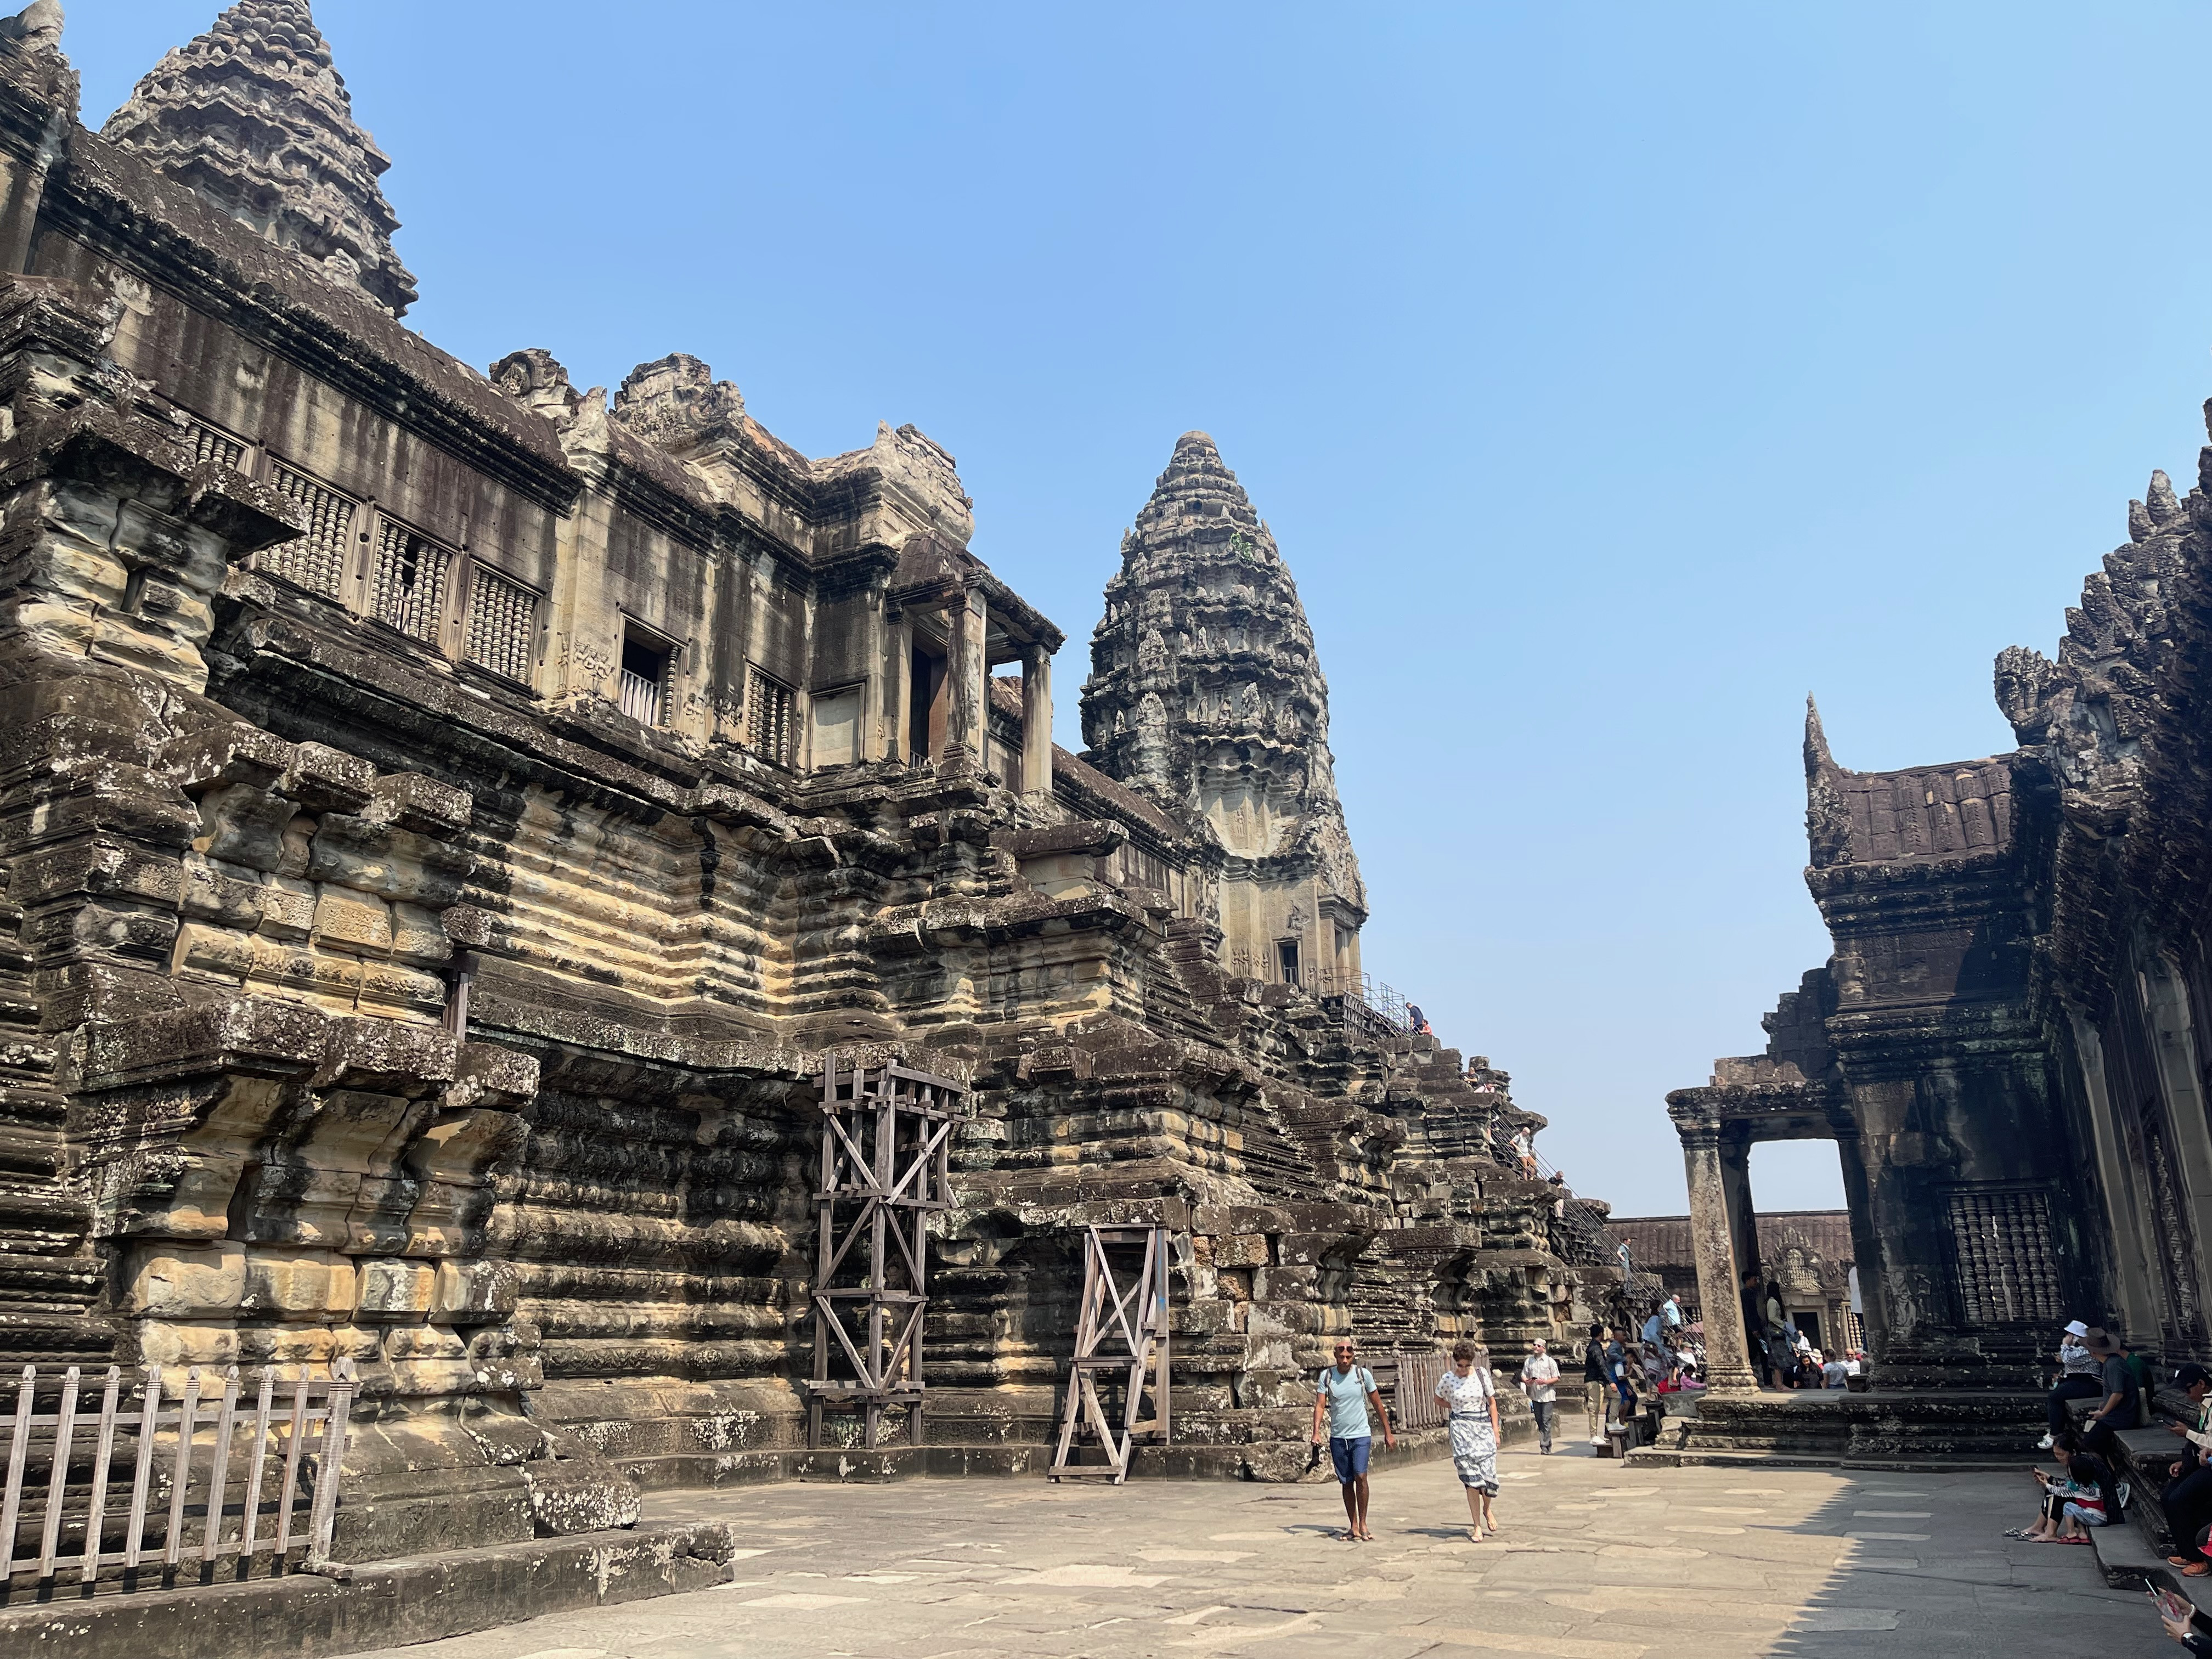 Hé lộ kỹ thuật xây dựng di sản Angkor Wat Campuchia  Báo Công an Nhân dân  điện tử